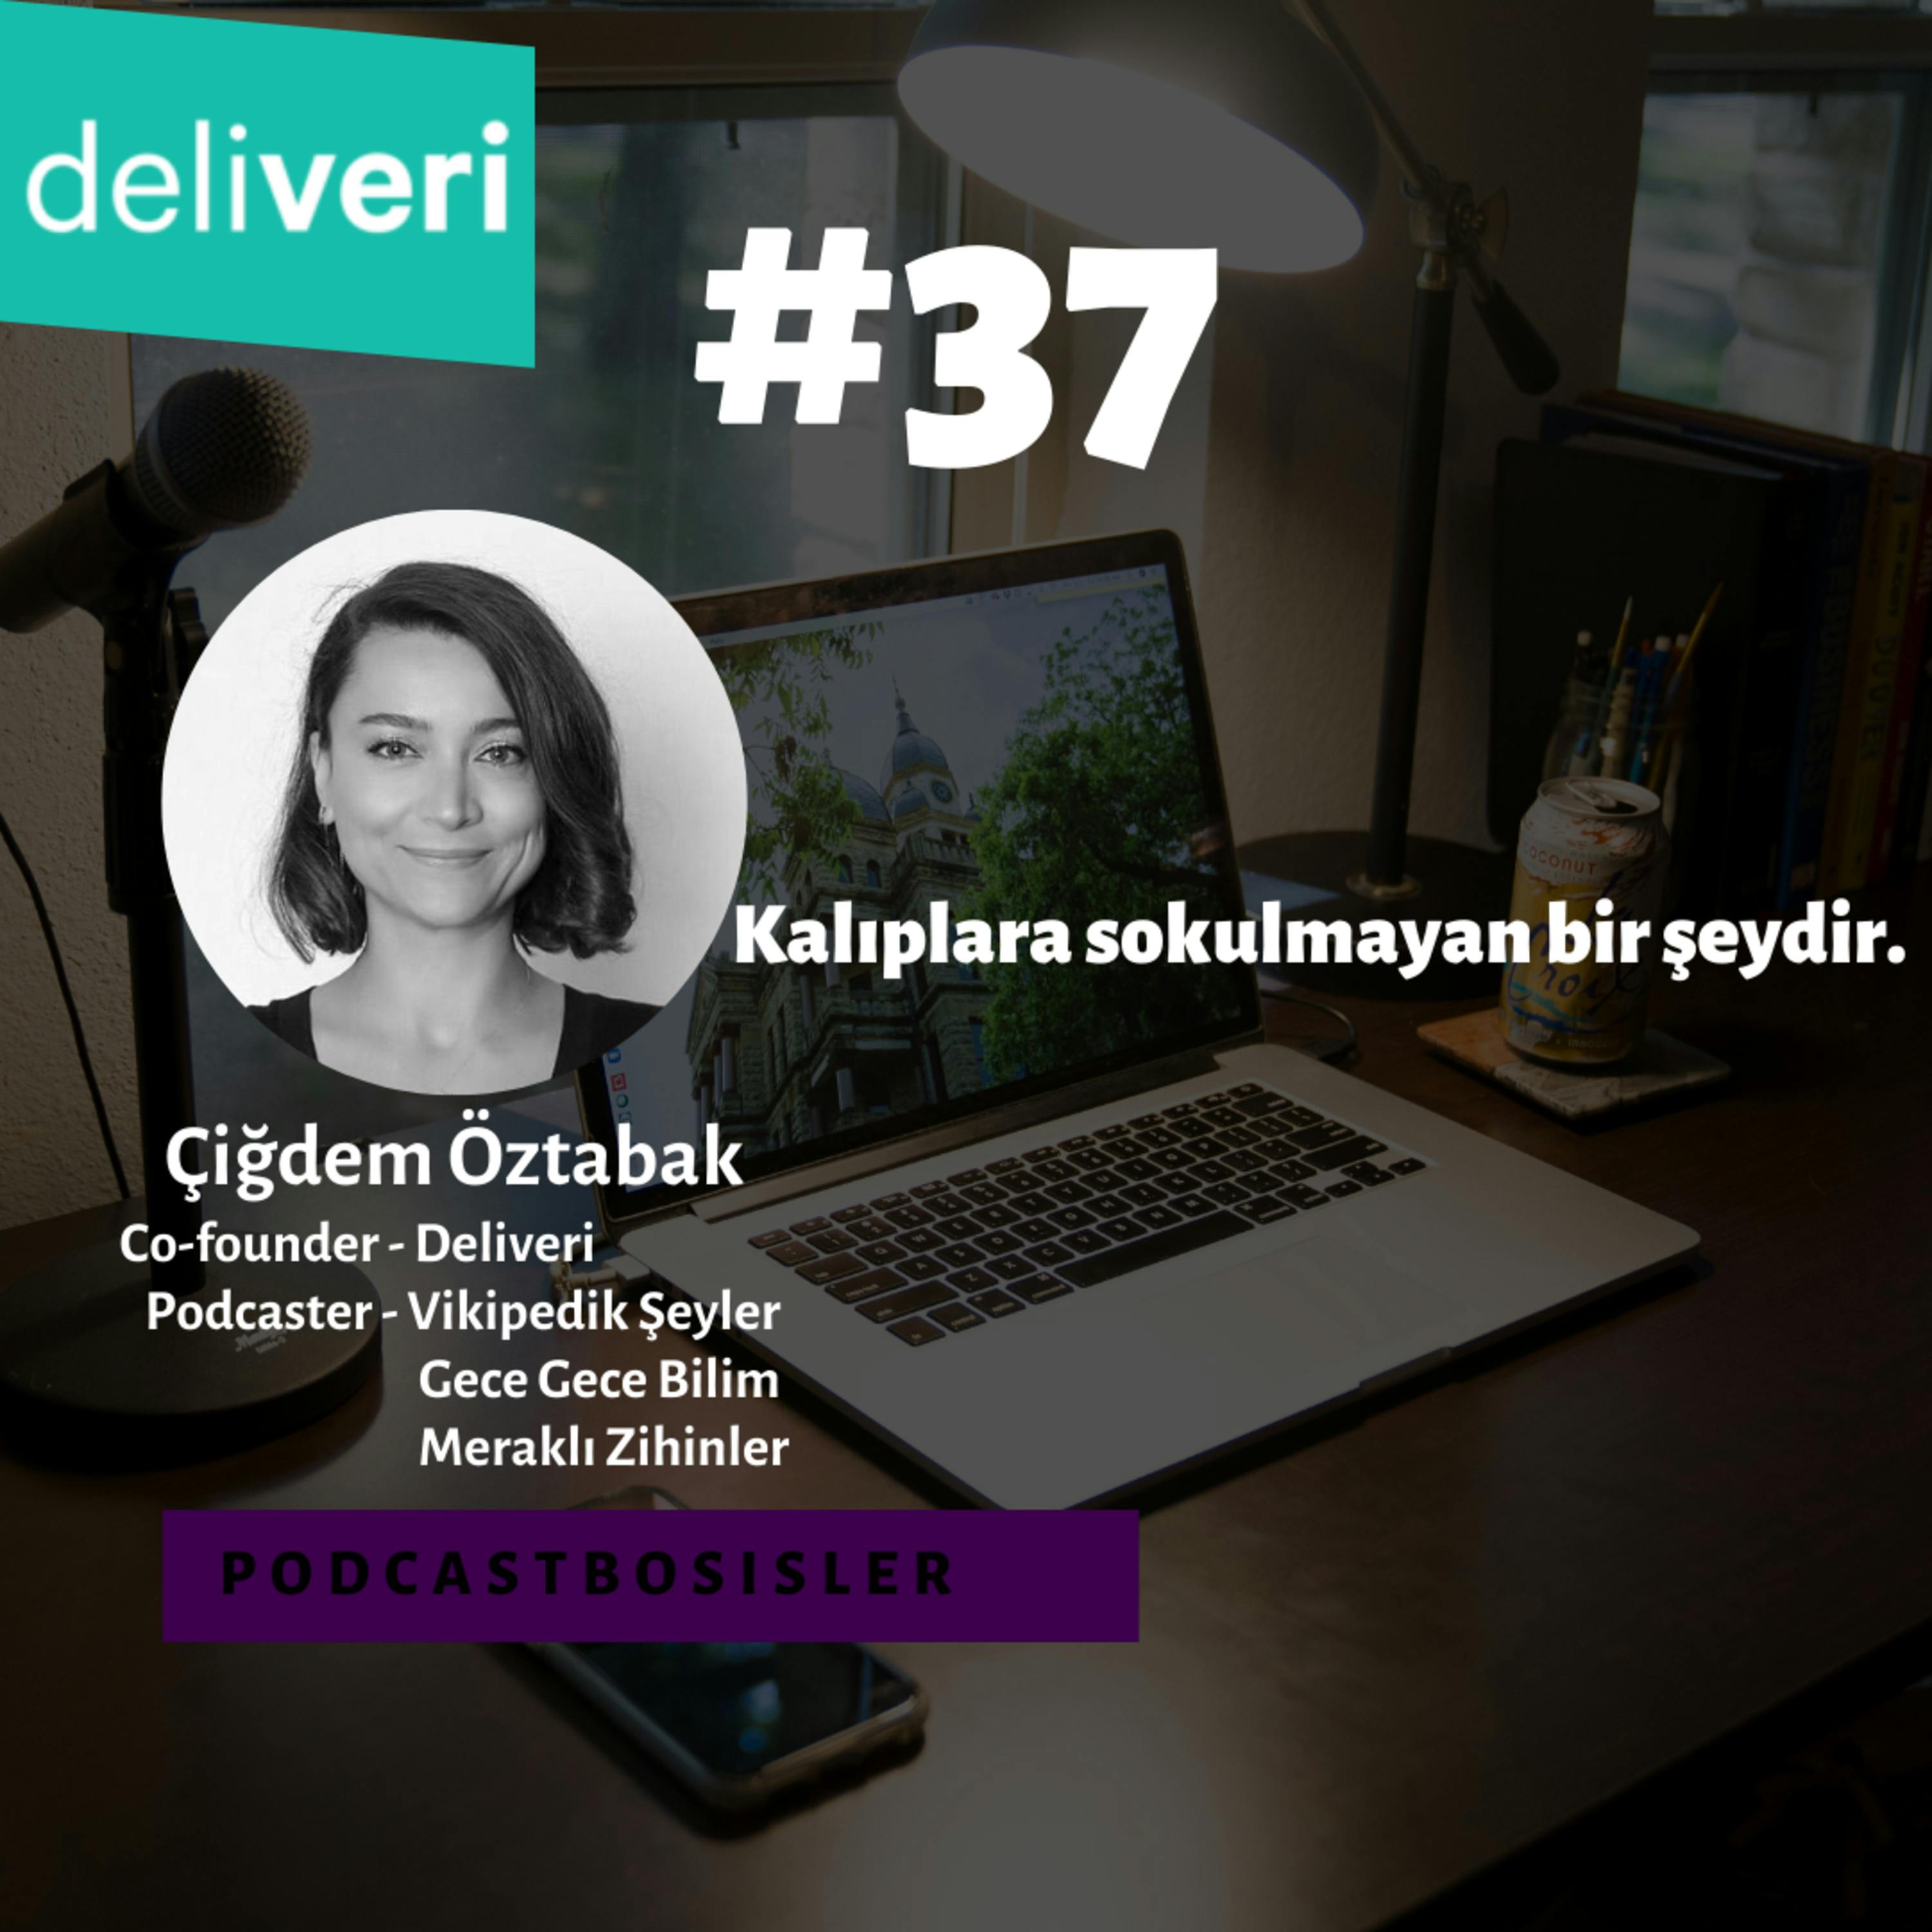 #37 Deliveri'nin kurucu ortağı, Vikipedik Şeyler'in co-hostu Çiğdem Öztabak'ın girişimcilik ve podcasterlık hikayesi